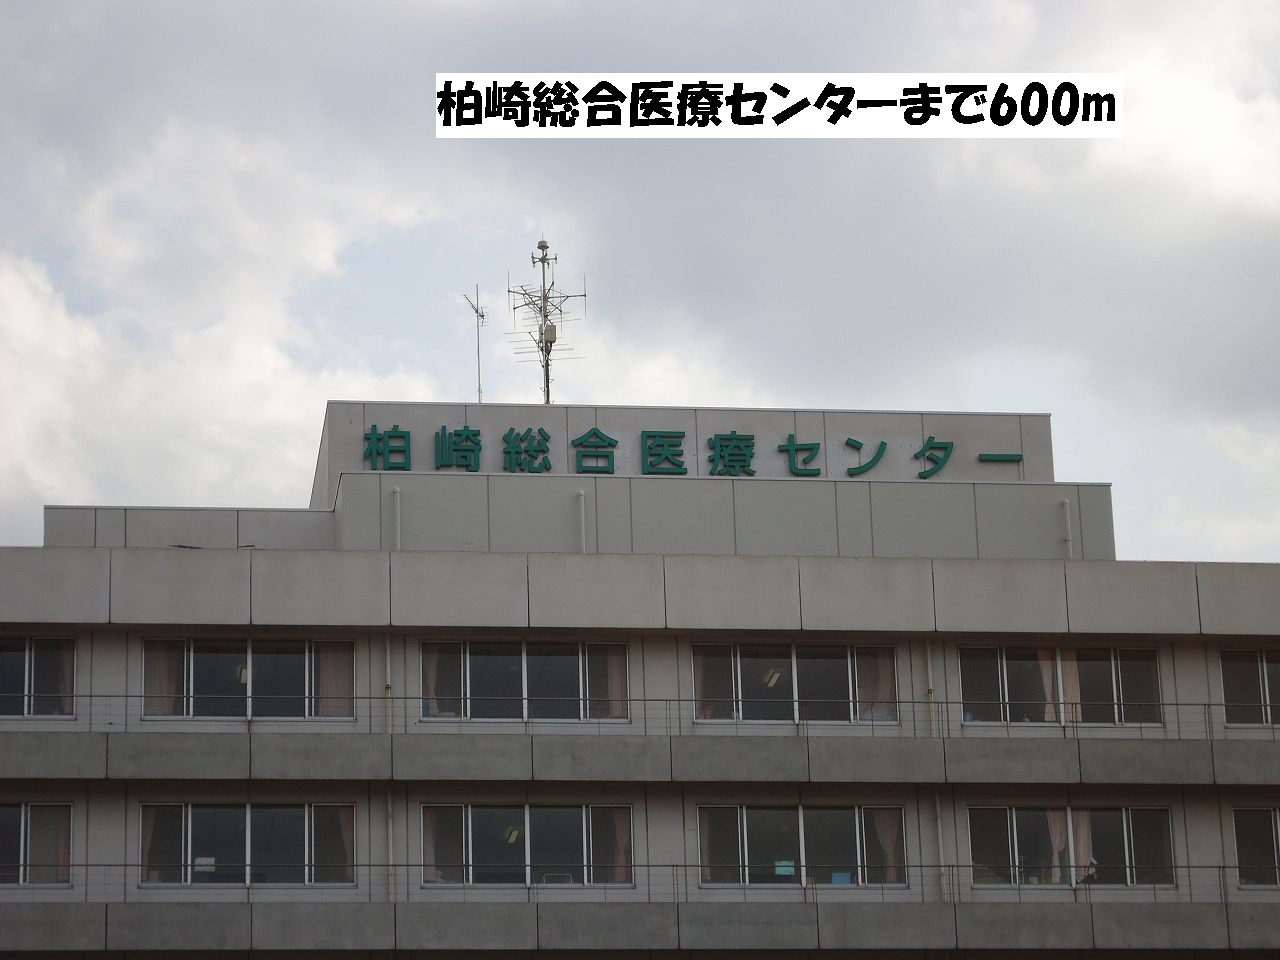 Hospital. Kashiwazaki General Medical Center until the (hospital) 600m